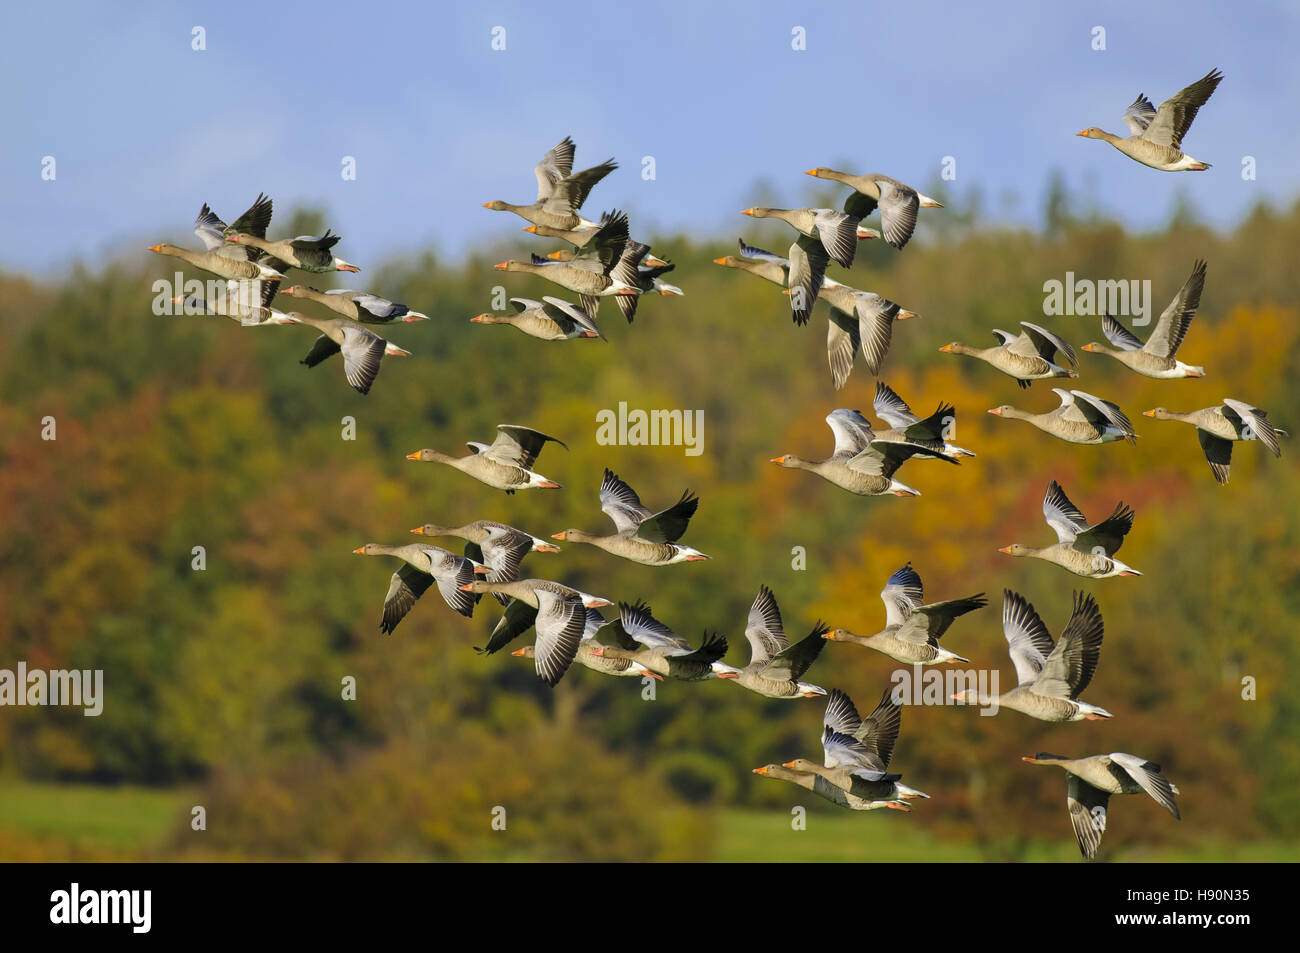 greylag geese, Anser anser, gross mohrdorf, mecklenburg-vorpommern, germany Stock Photo